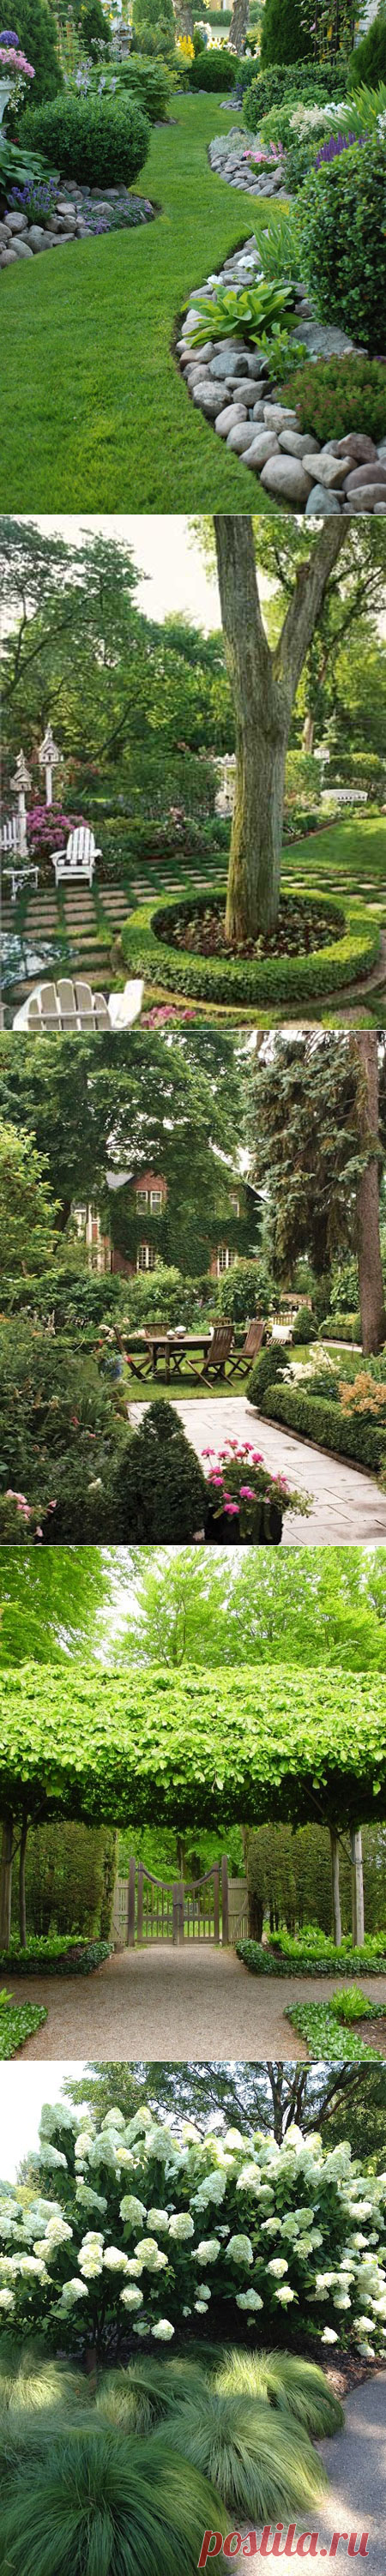 Создаем красивый дизайн сада своими руками: 10 главных секретов